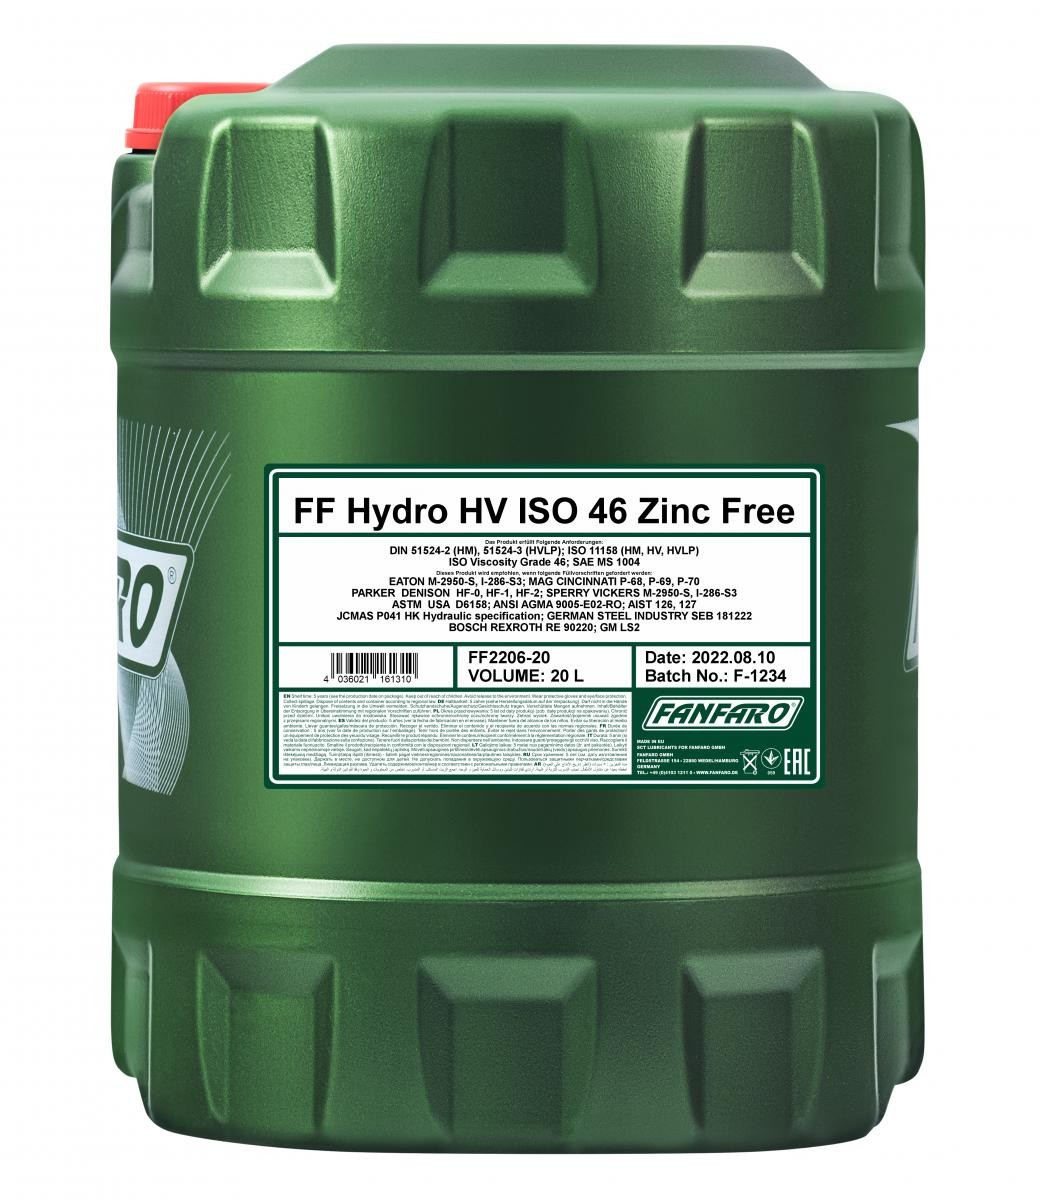 FANFARO Hydro HV ISO 22, VI 280 Capacity: 20l Hydraulic fluid FF2206-20 buy